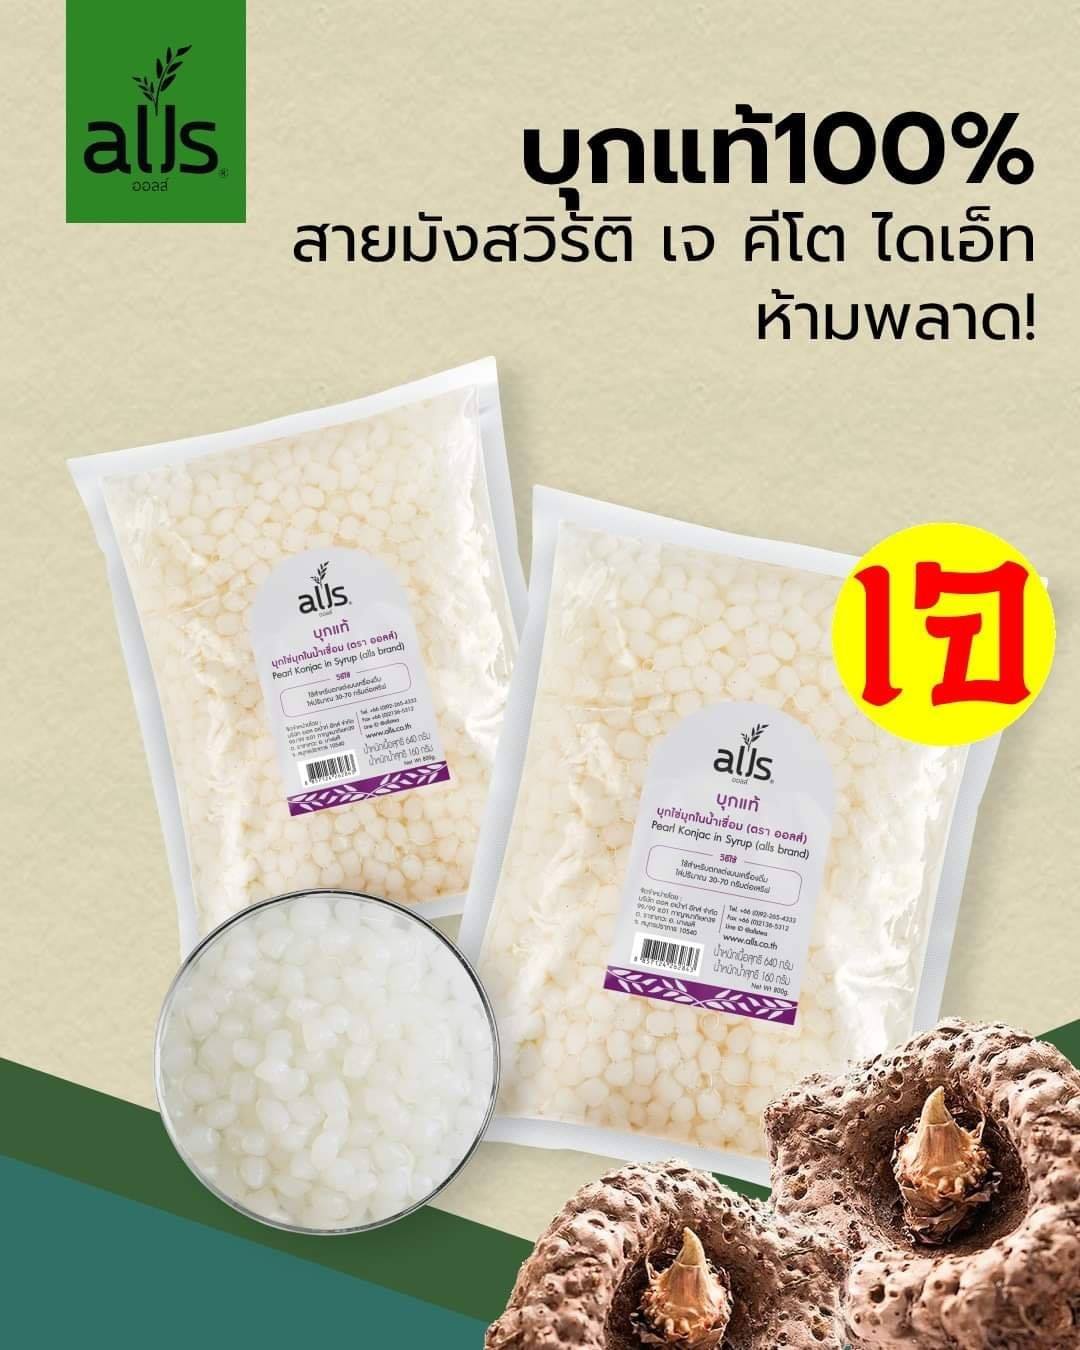 บุกแท้ 100% (ตราออลส์) 800กรัม บุกไข่มุก บุกไข่มุกในน้ำเชื่อม alls Thailand